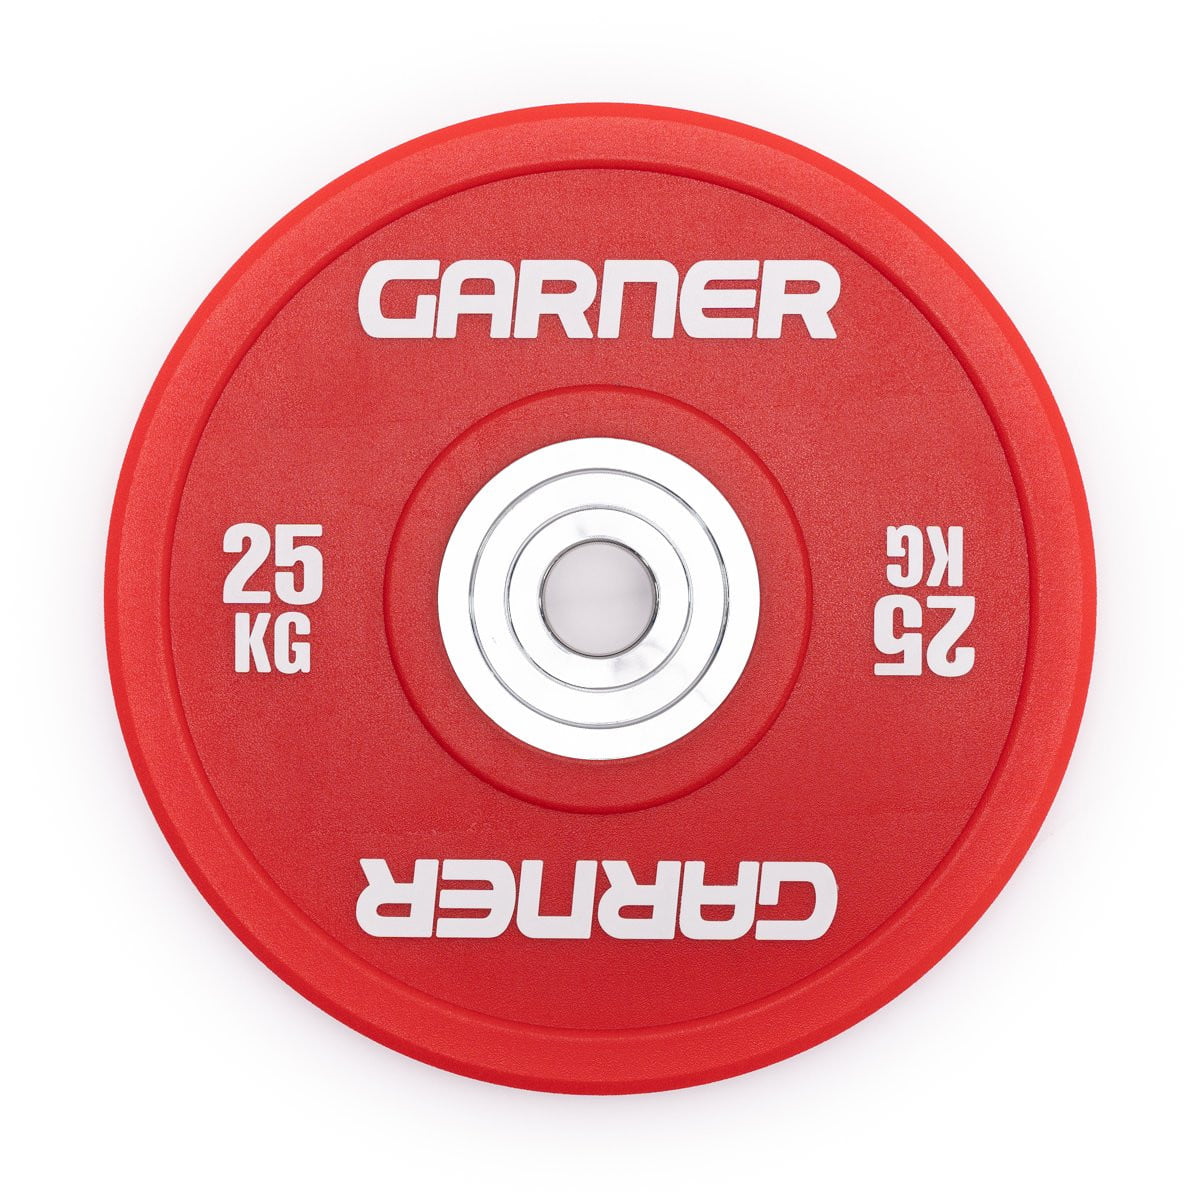 Garner Pro PU Bumper Plates